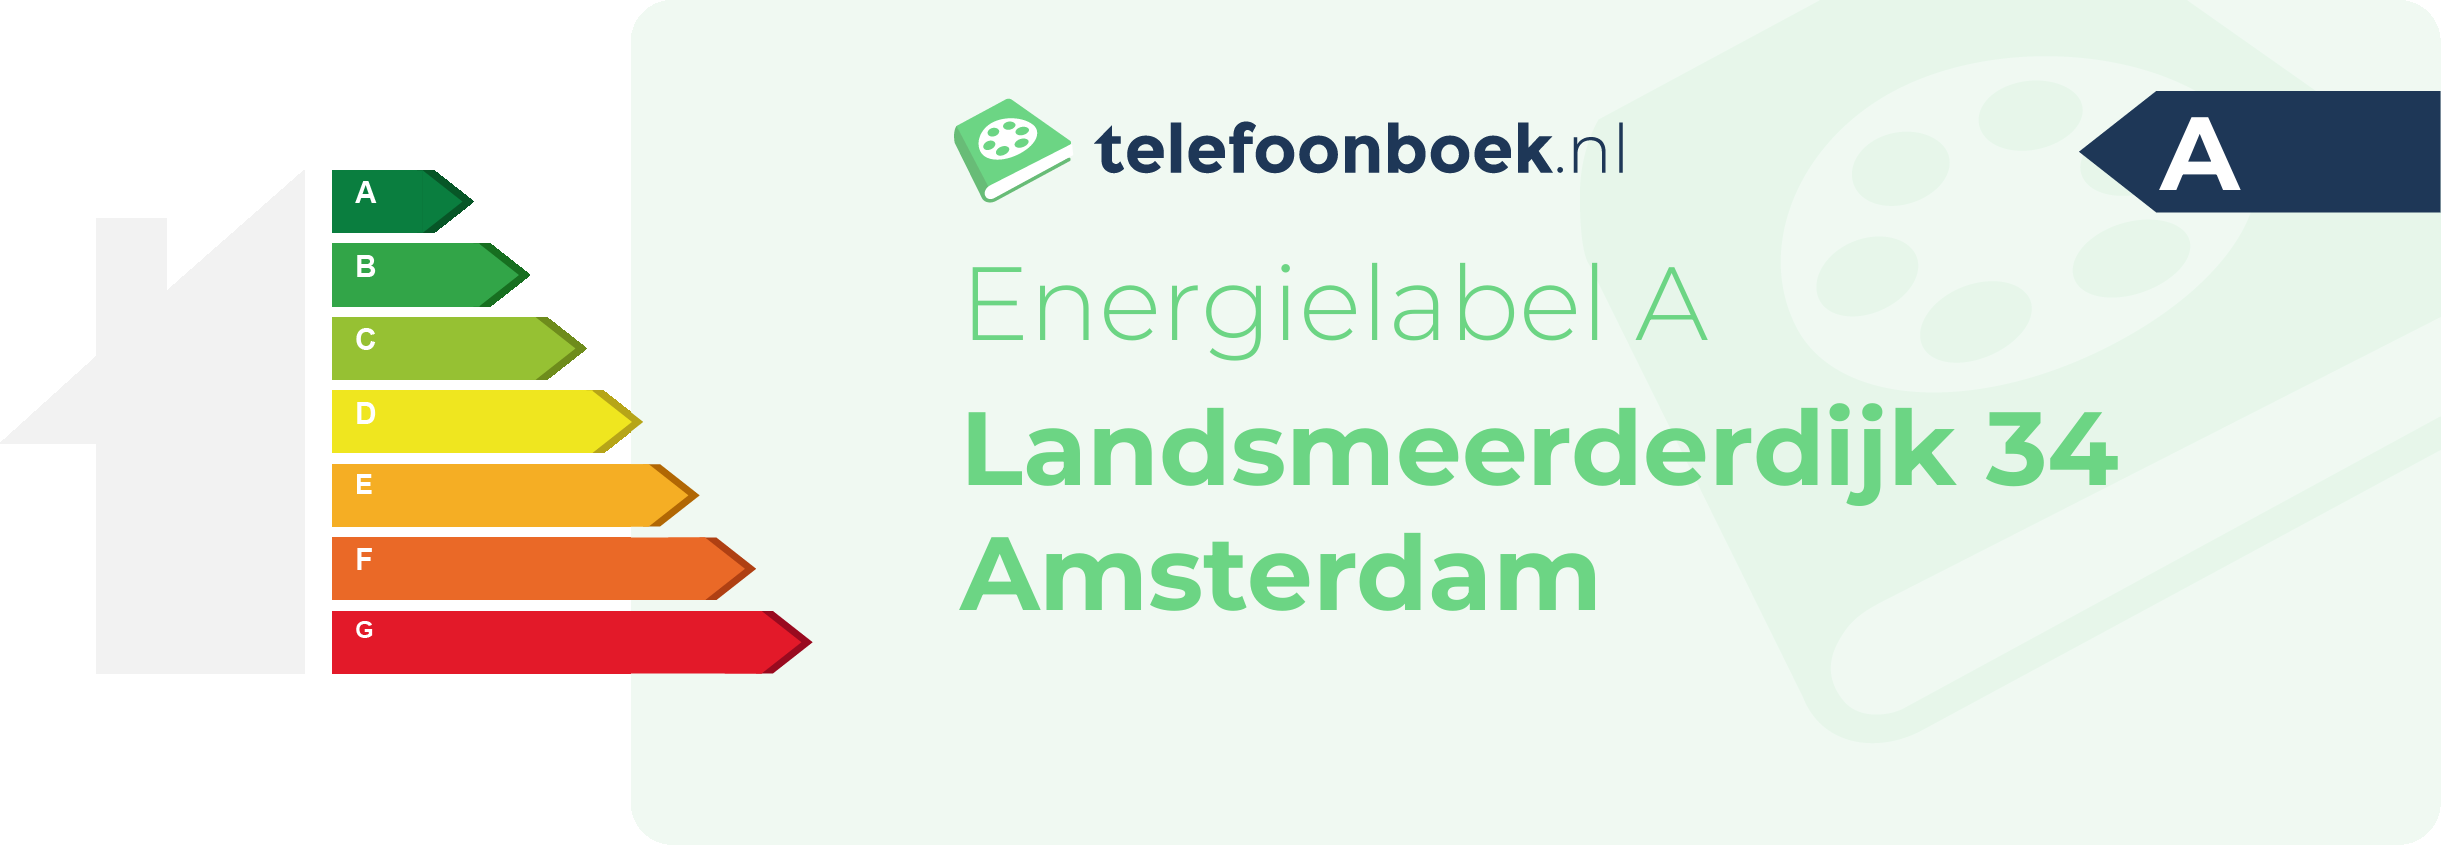 Energielabel Landsmeerderdijk 34 Amsterdam